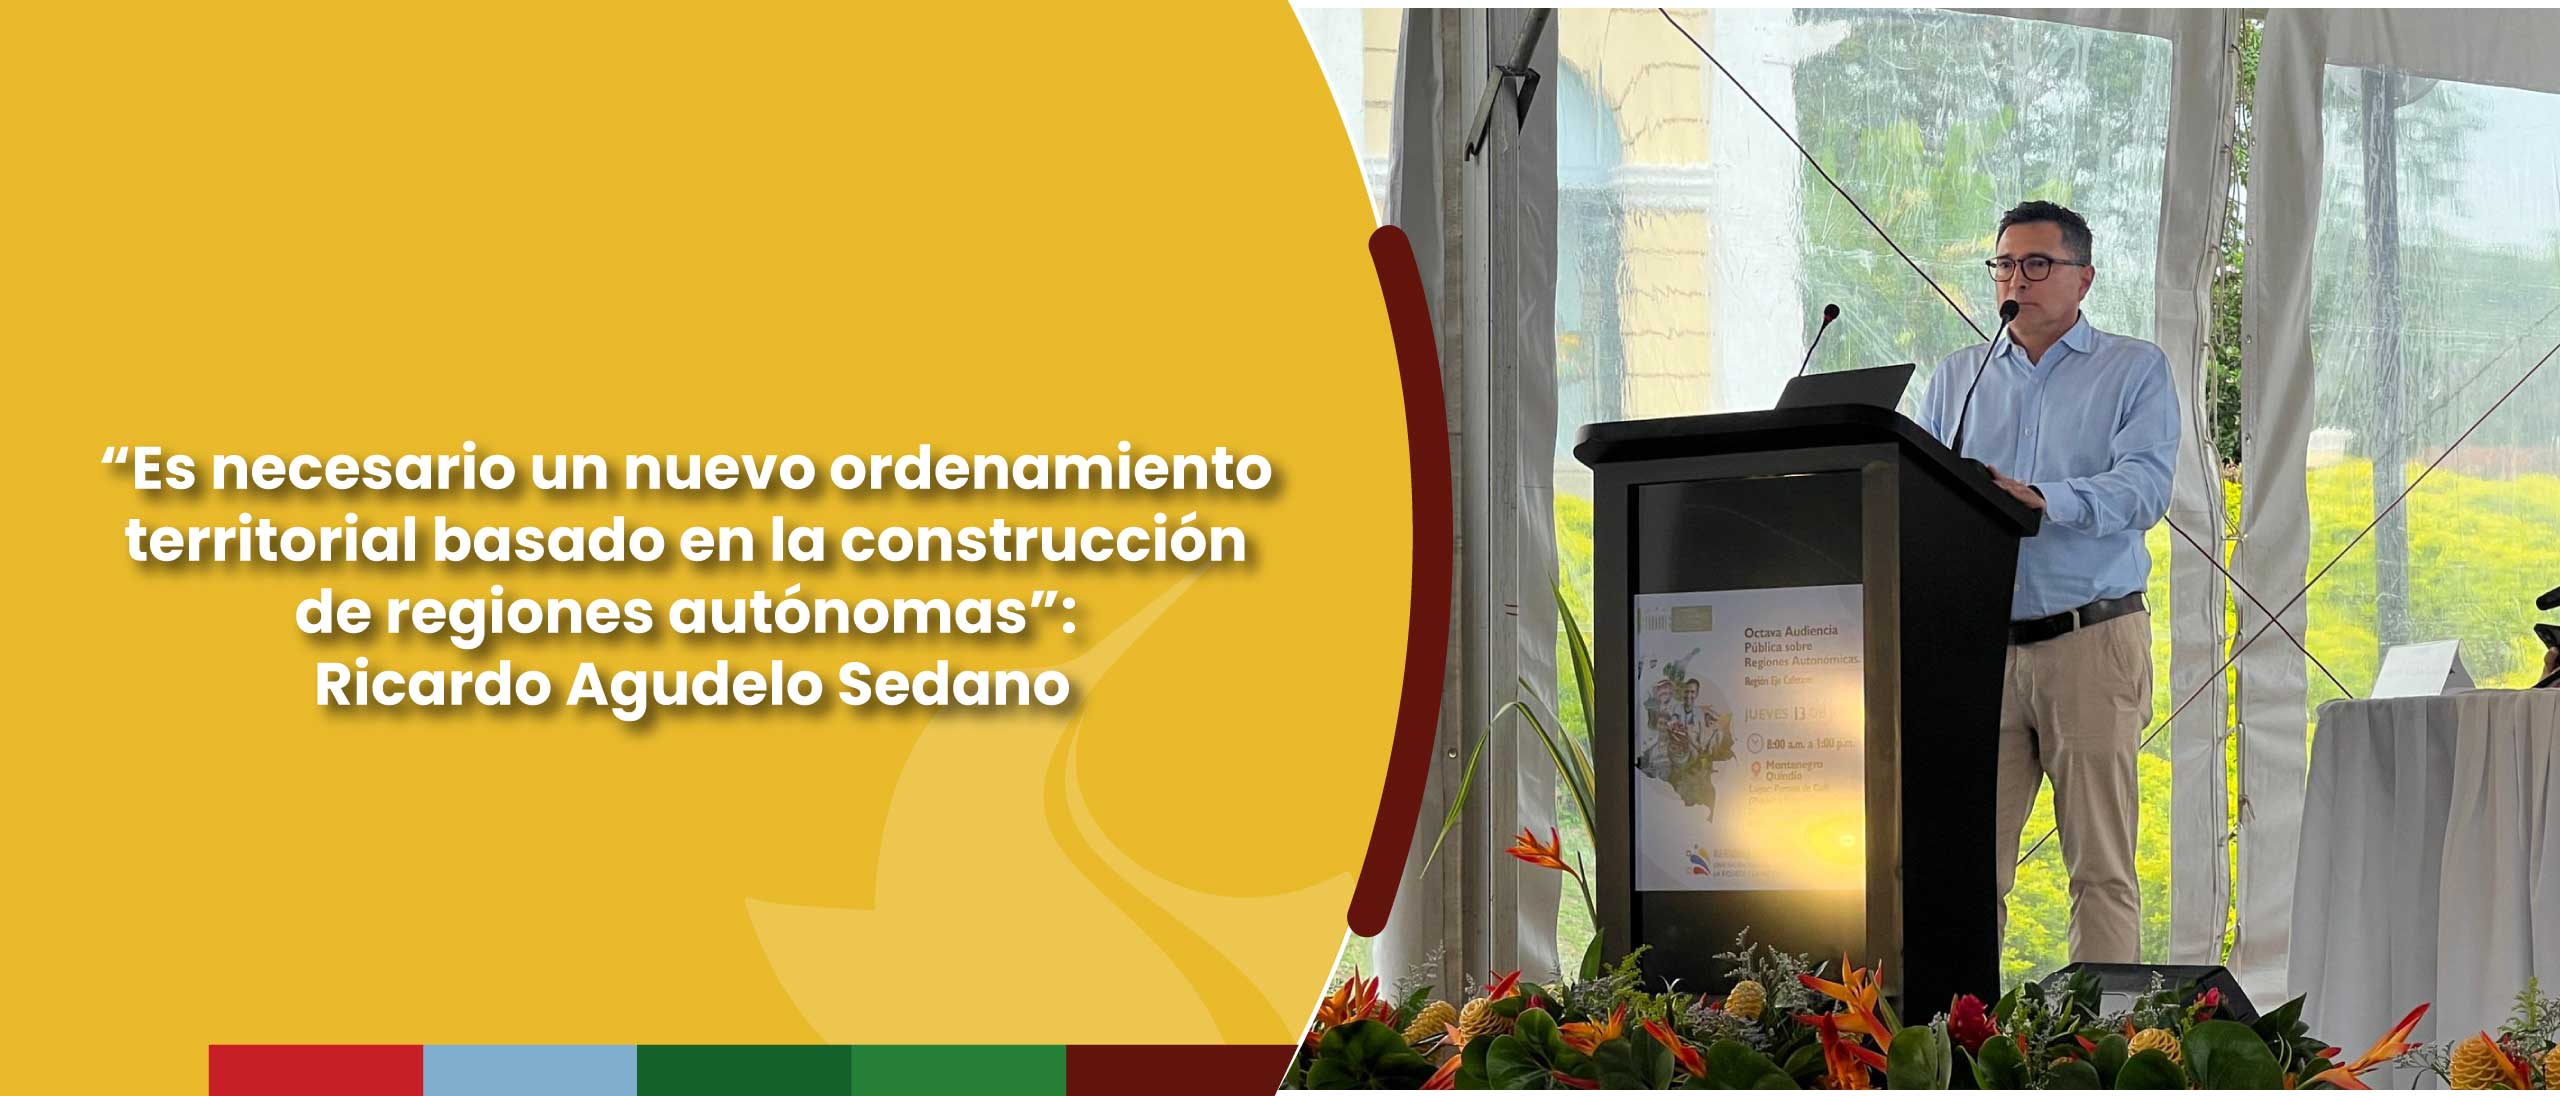 “Es necesario un nuevo ordenamiento territorial basado en la construcción de regiones autónomas”: Ricardo Agudelo Sedano